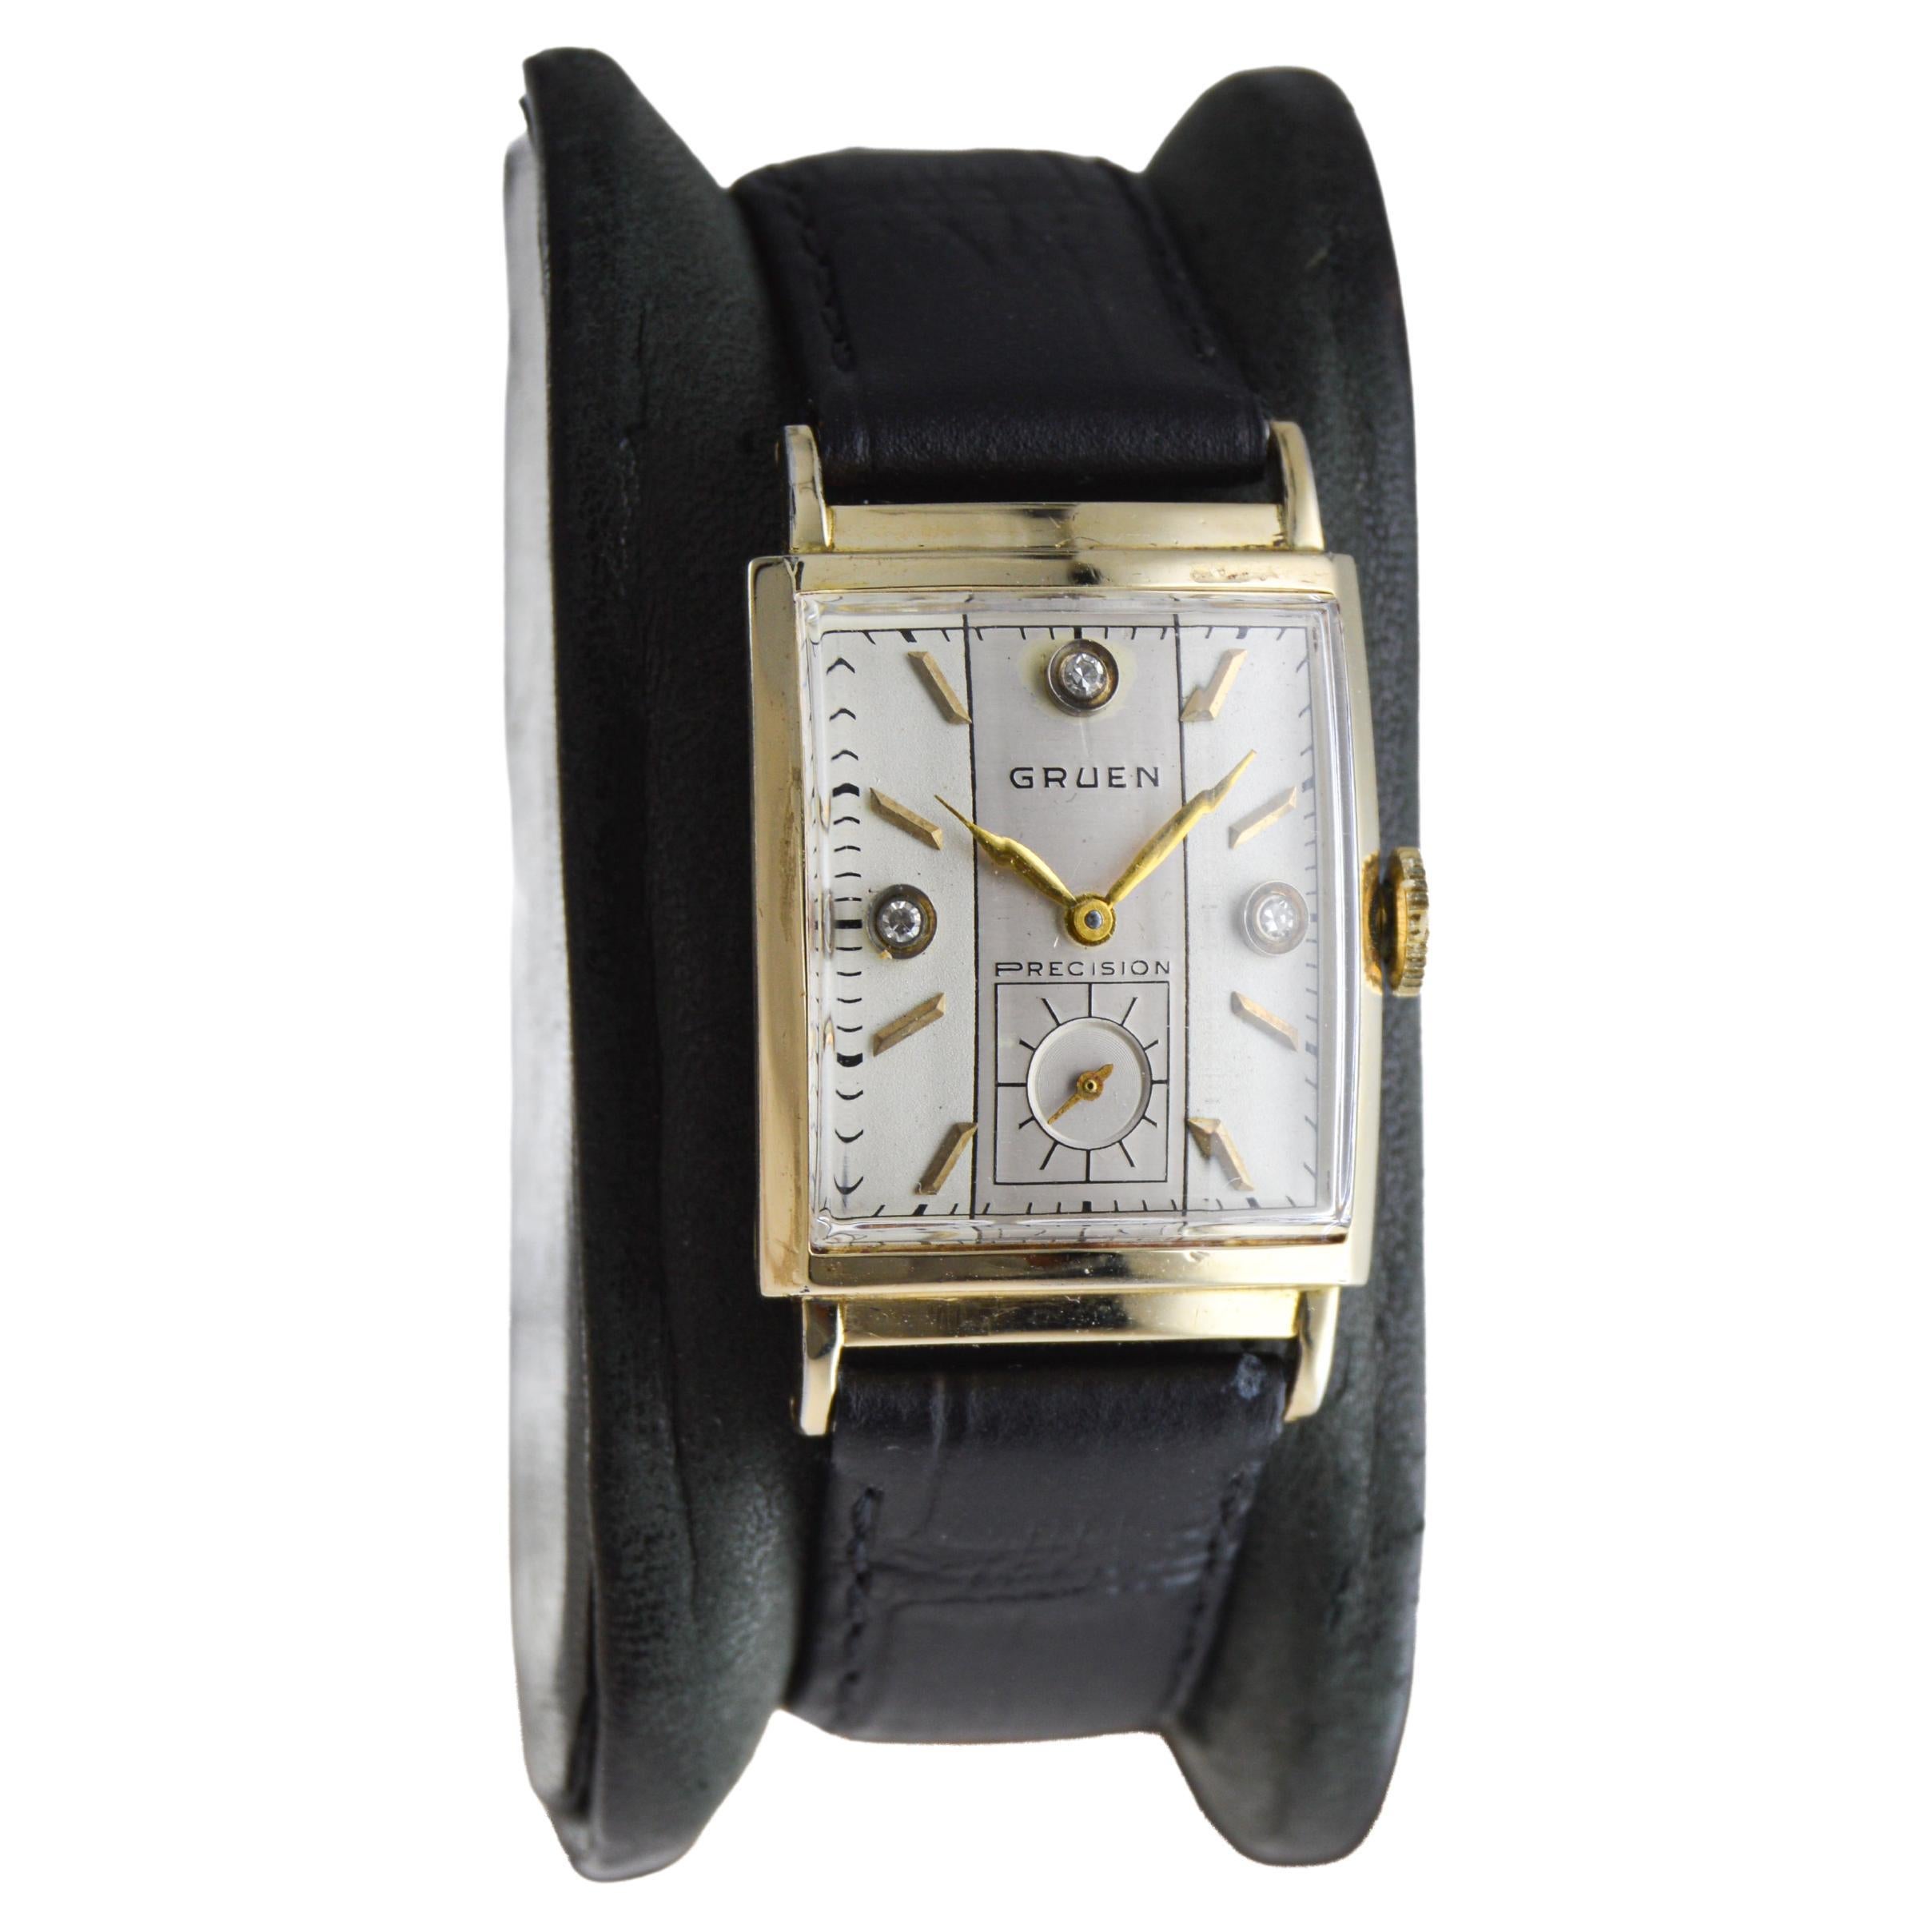 FABRIK / HAUS: Gruen Watch Company
STIL / REFERENZ: Art Deco / Referenz 449
METALL / MATERIAL: Gelbgold-Füllung
CIRCA / JAHR: 1940er Jahre
ABMESSUNGEN / GRÖSSE: Länge 36mm X Breite 22mm
UHRWERK / KALIBER: Handaufzug / 17 Jewels / Kaliber